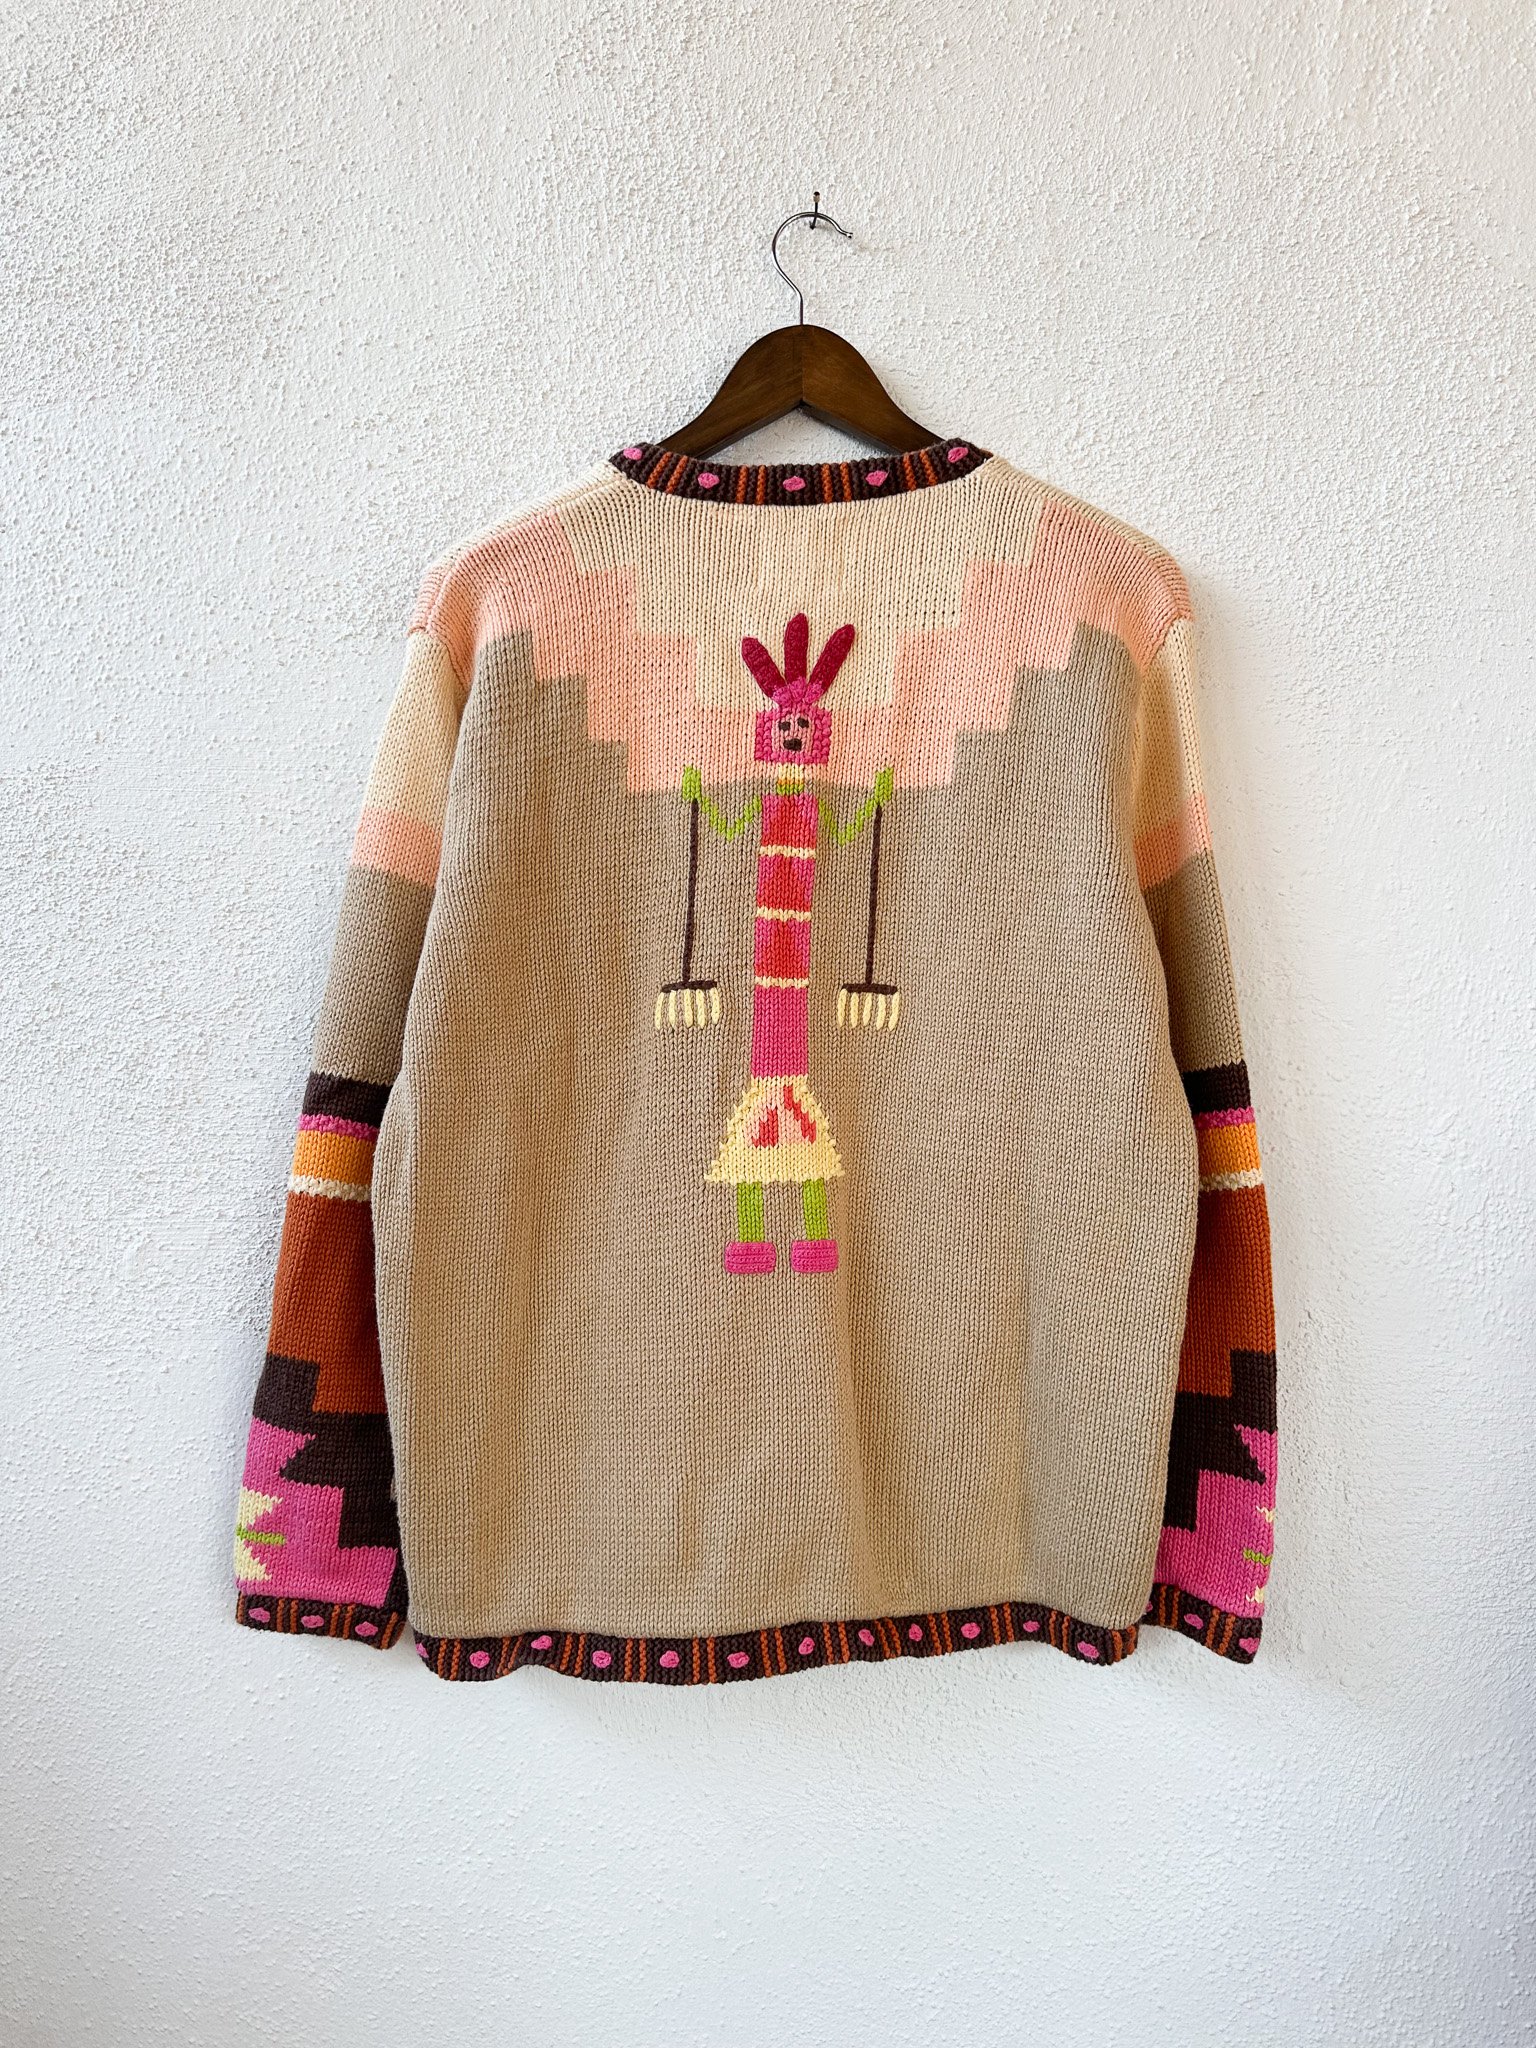 Vintage Southwest Cardigan Sweater — 4KINSHIP